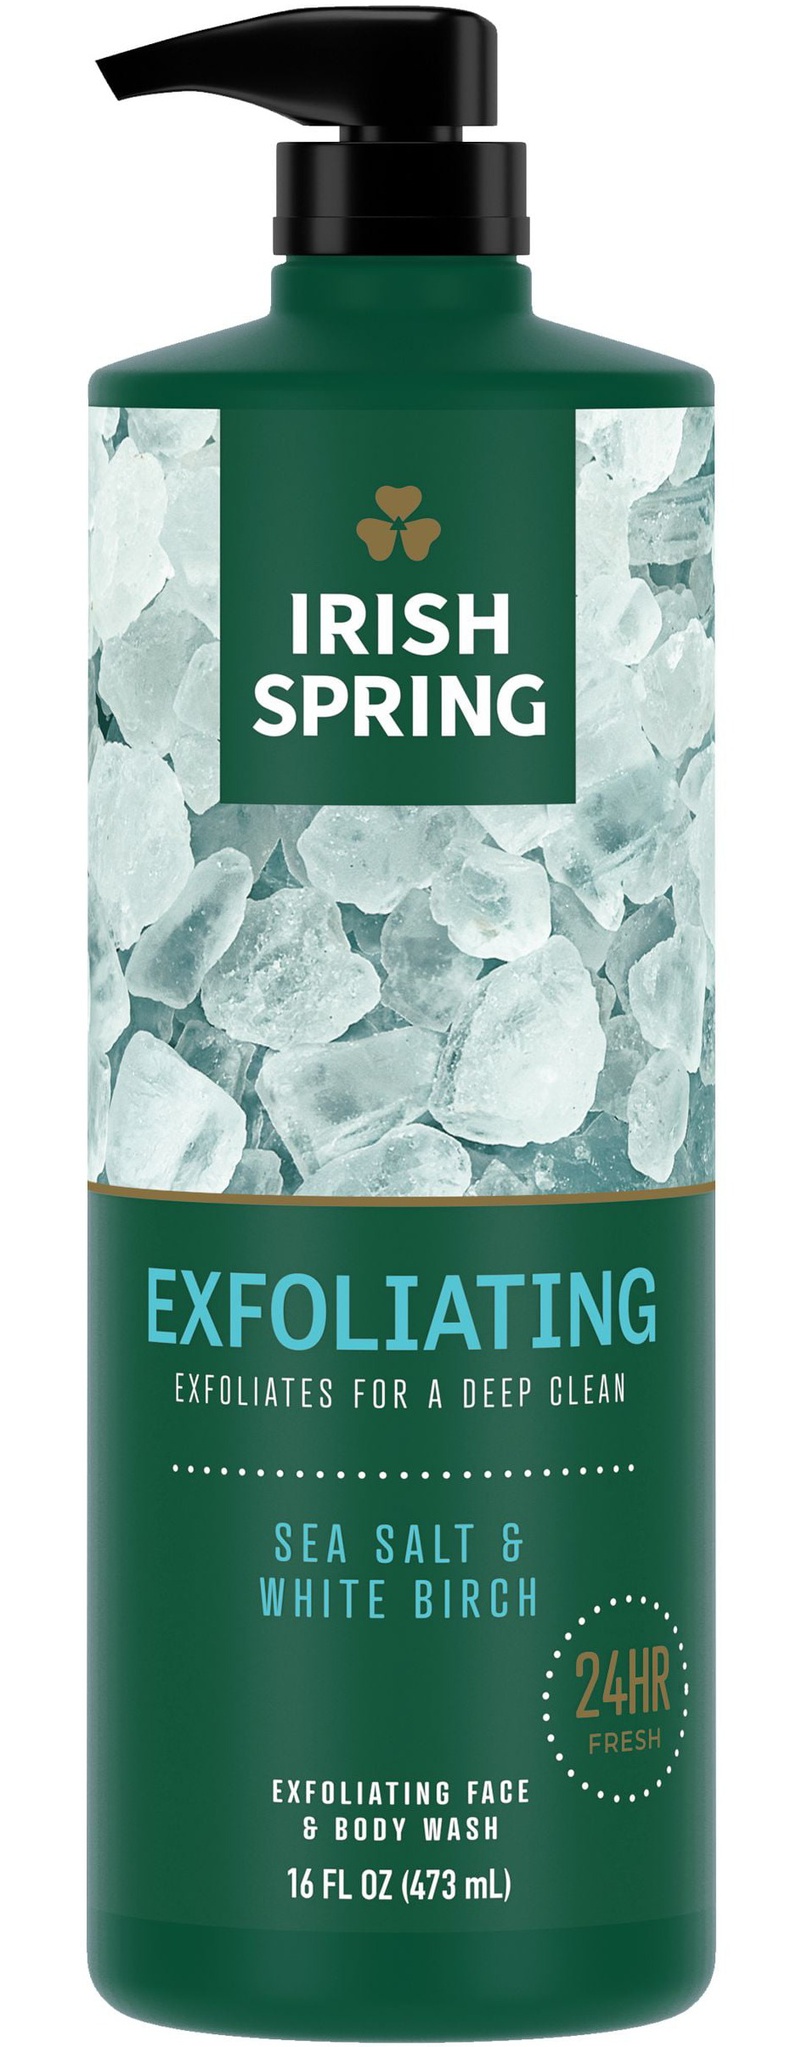 Irish Spring Exfoliating Face & Body Wash